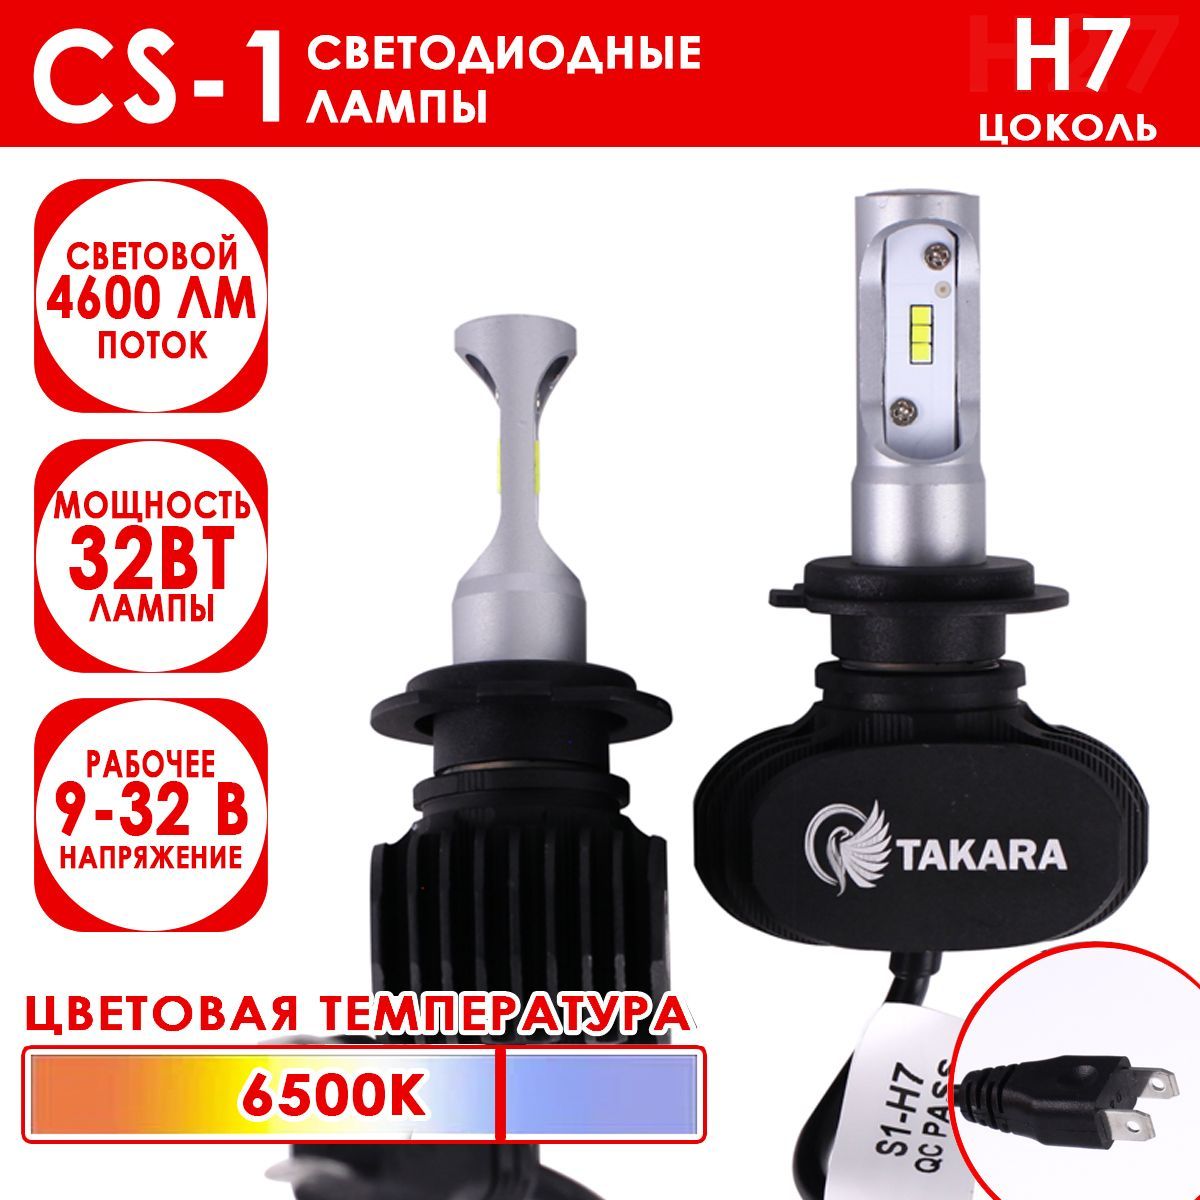 Светодиодные лампы Takara CS-1 цоколь H7, 6500K, 32W (2 Шт)